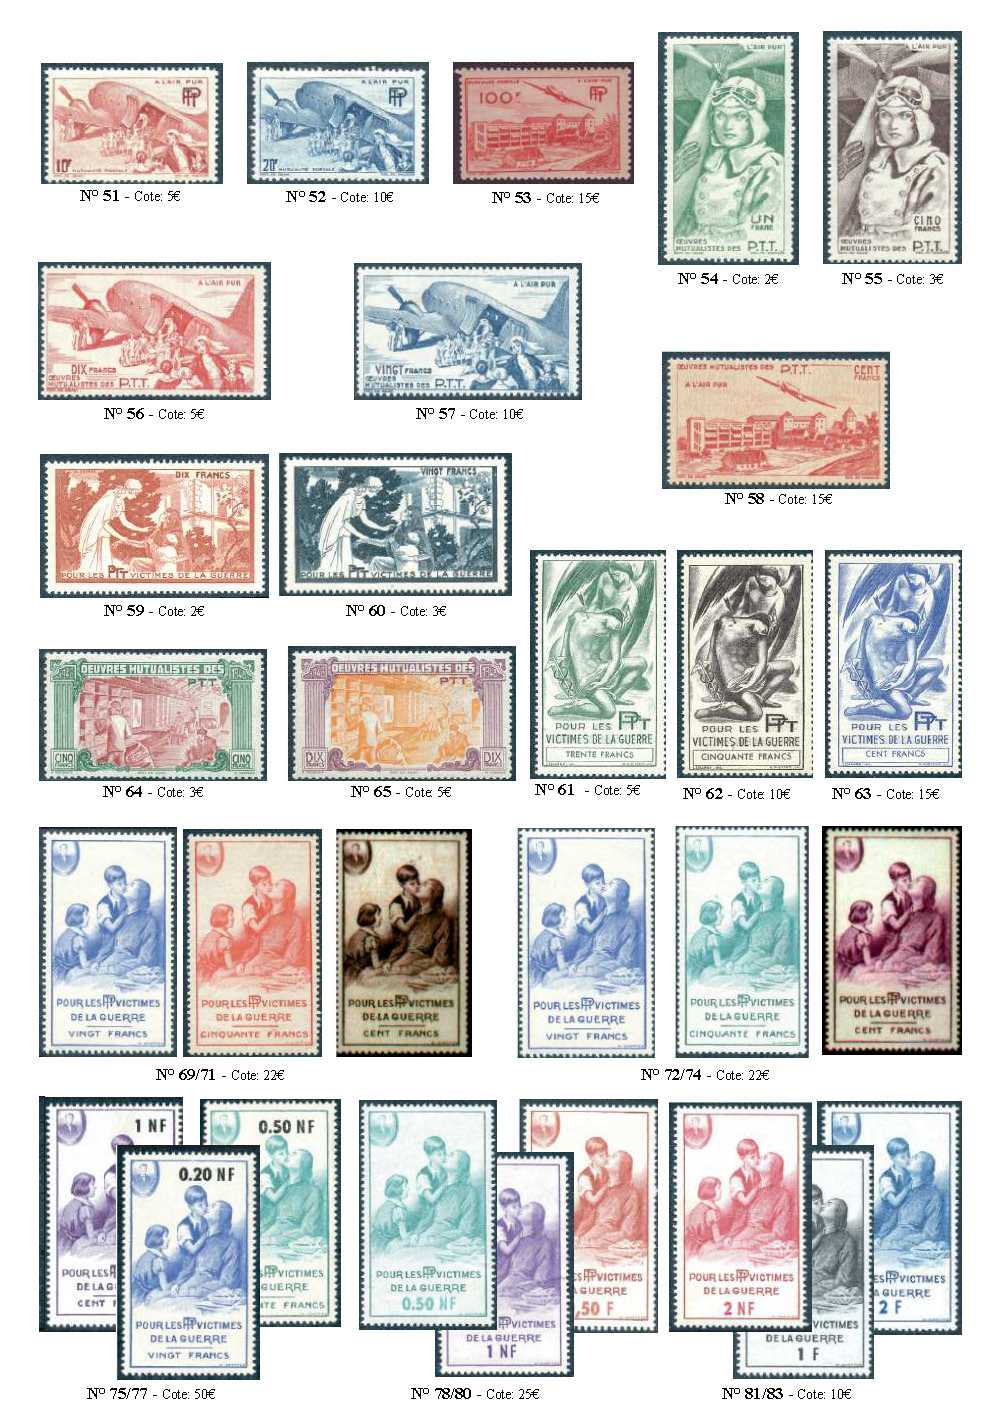 Les timbres de Bienfaisance des P.T.T.